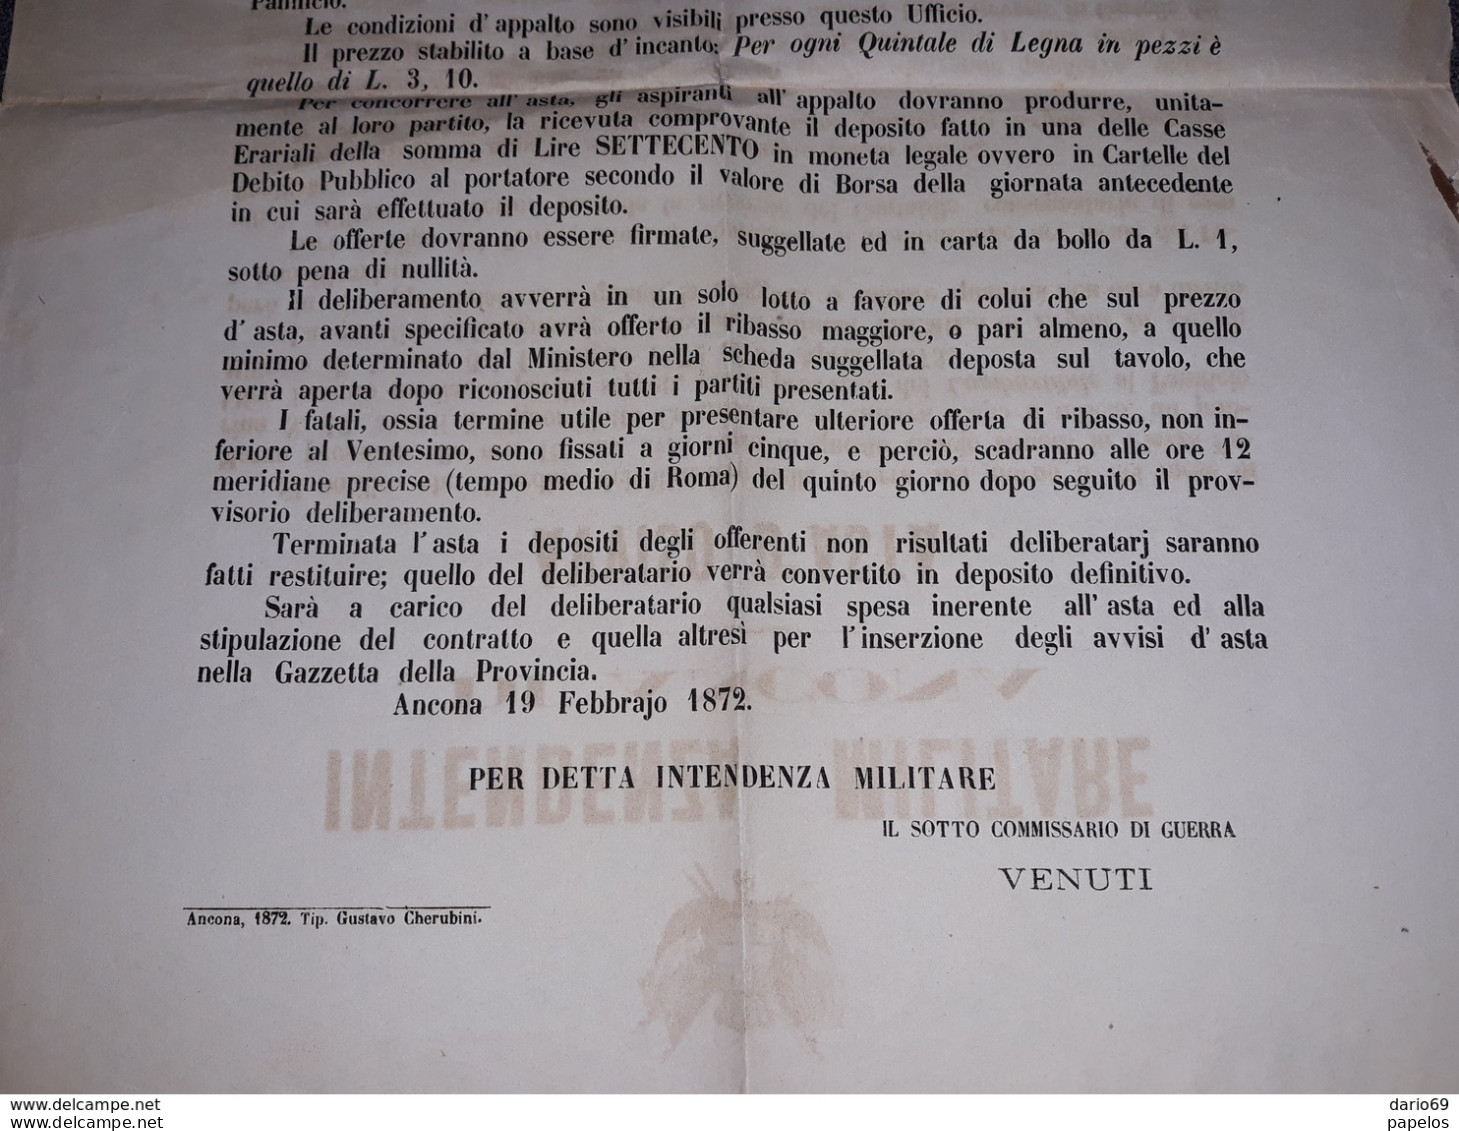 1872  MANIFESTO  INTENDENZA MILITARE DI ANCONA  AVVISO D'ASTA  PER IL COMBUSTIBILE AL PANIFICIO MILITARE - Documenti Storici